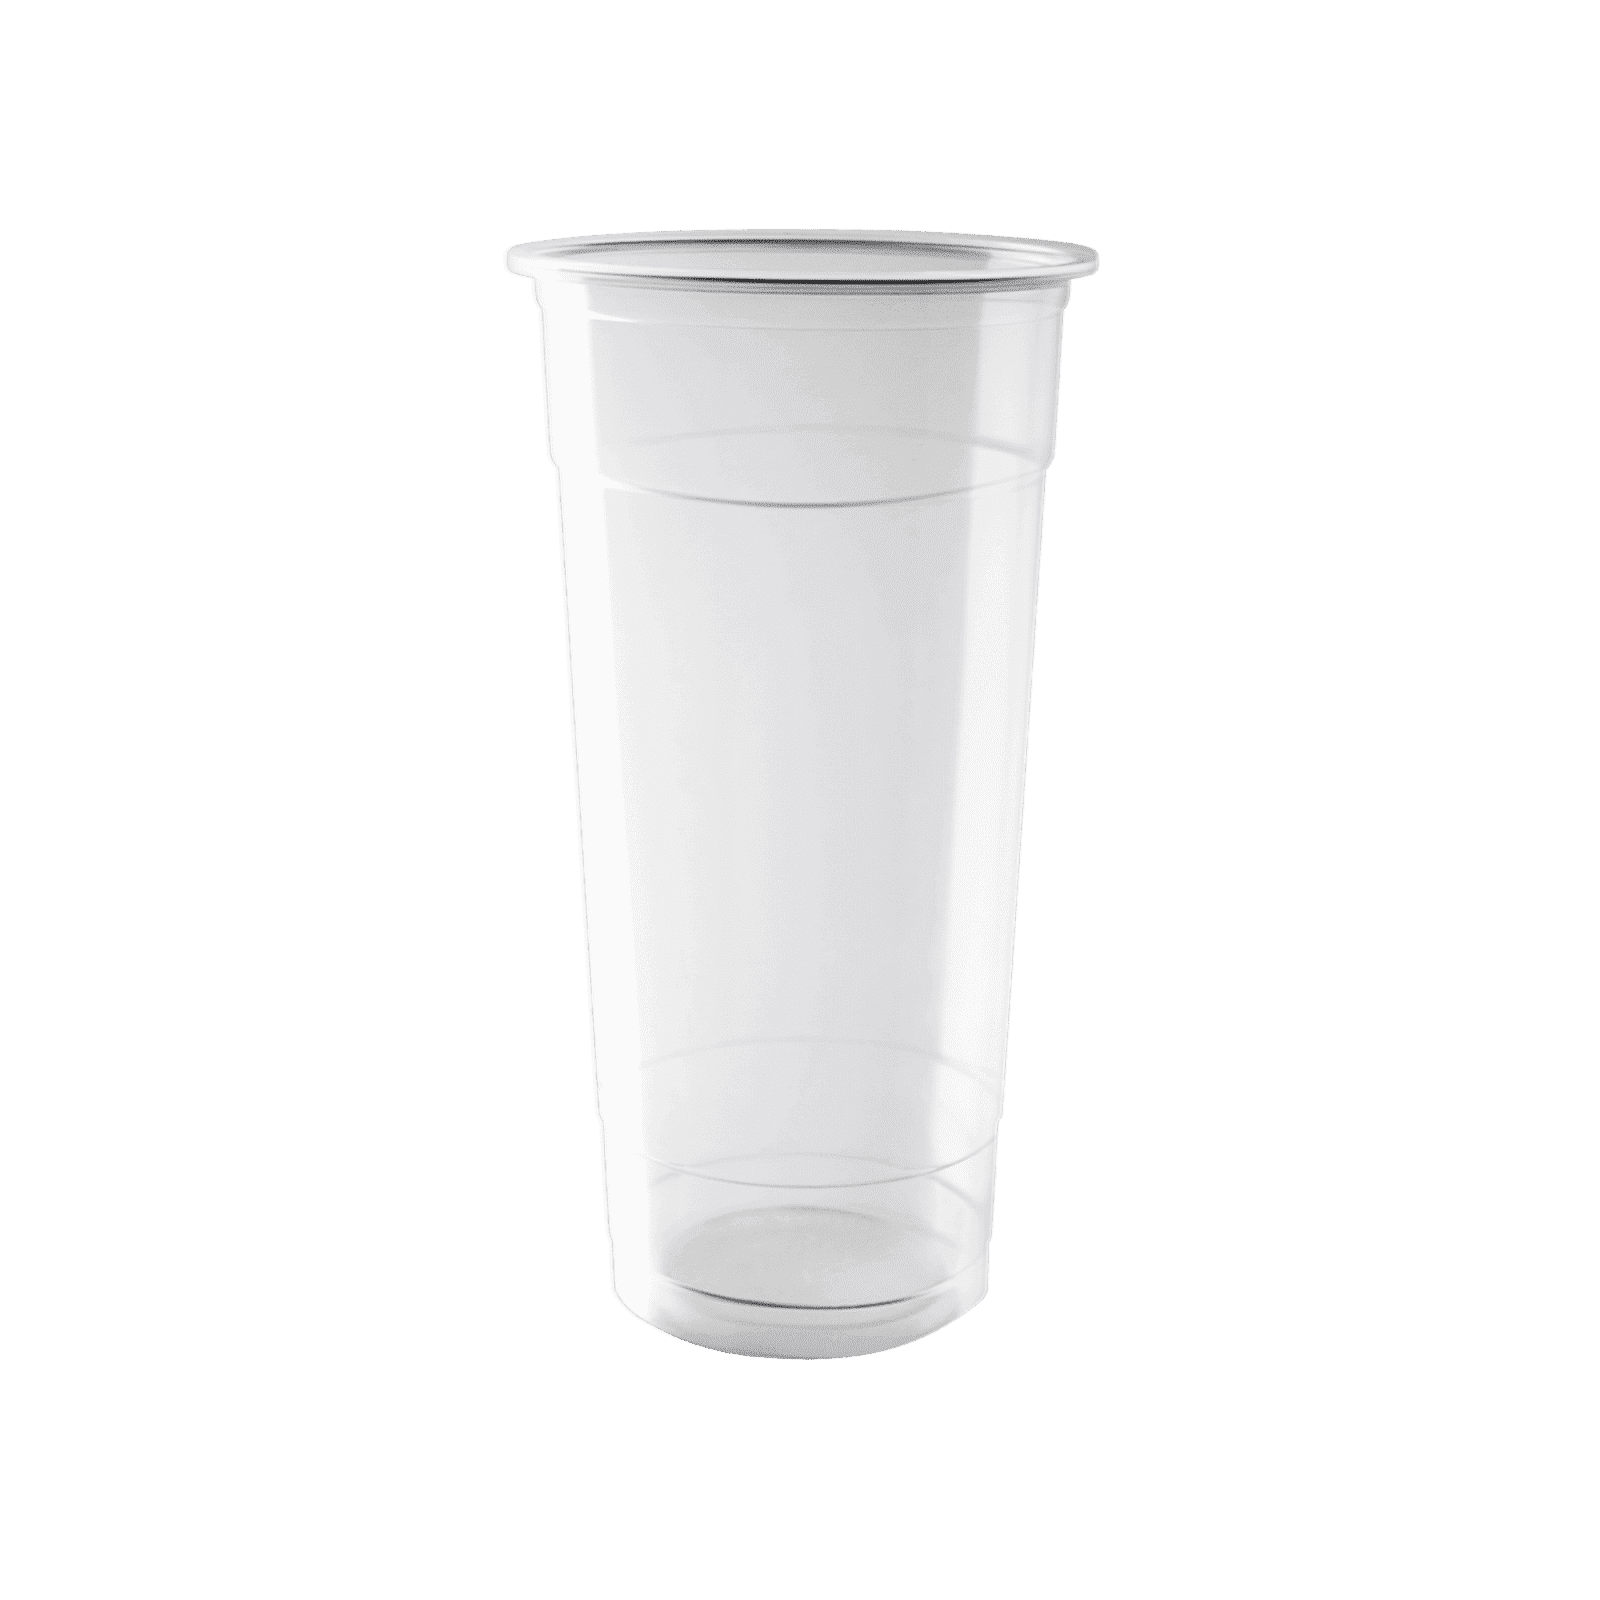 Enpak disposable cold plastic drinking cups with lids 24 oz EPK-PET-24